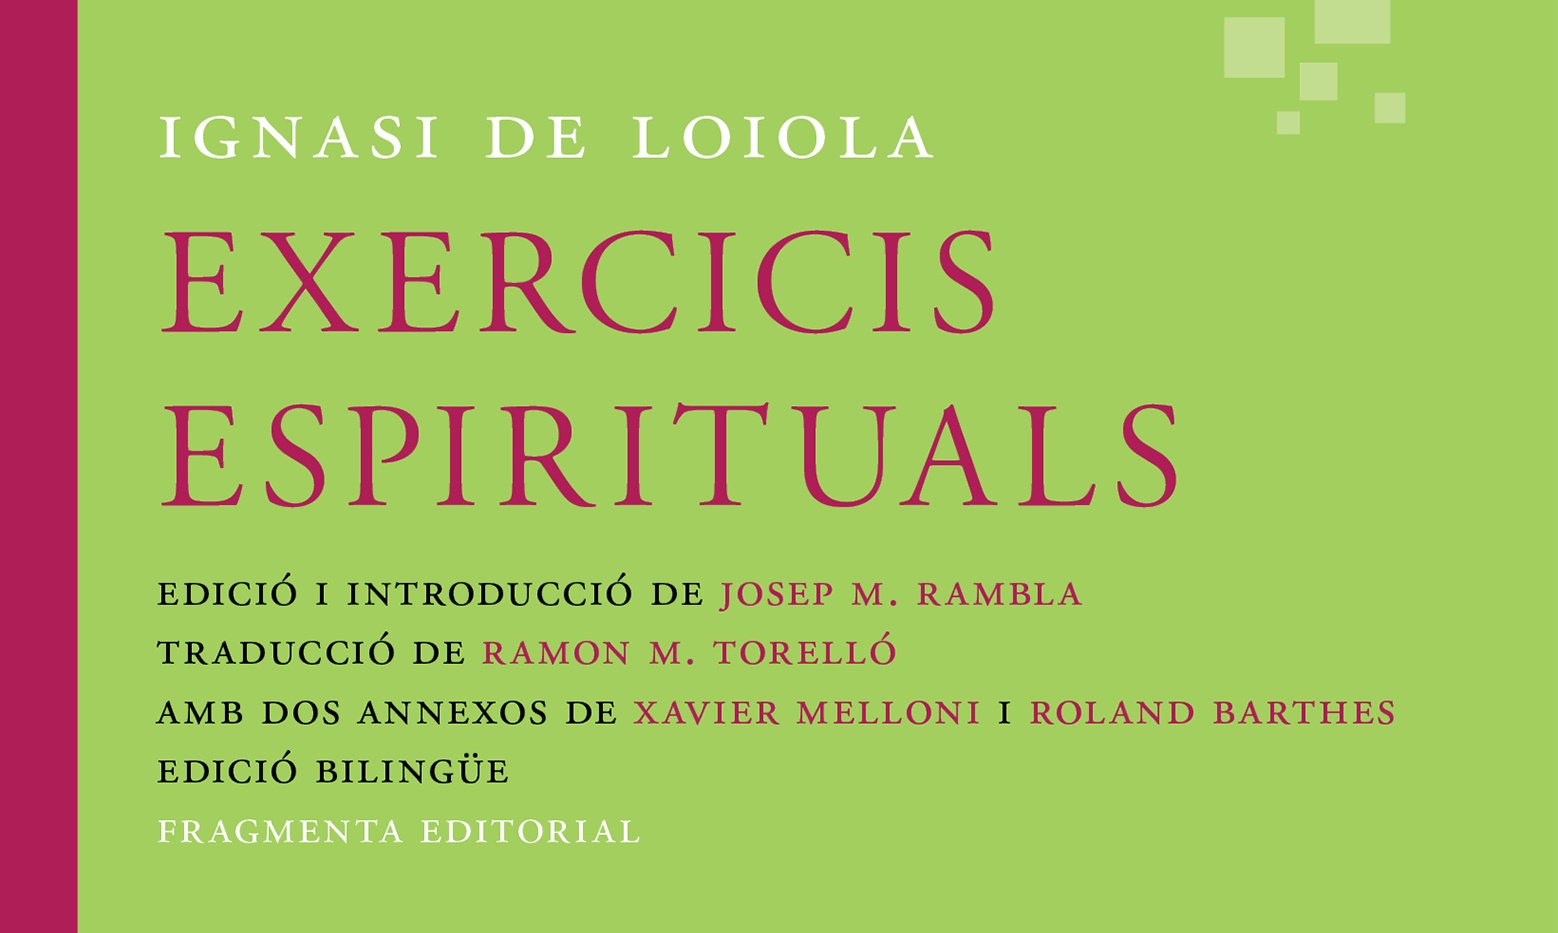 Les cantates de Bach i els 'Exercicis espirituals' d'Ignasi de Loiola